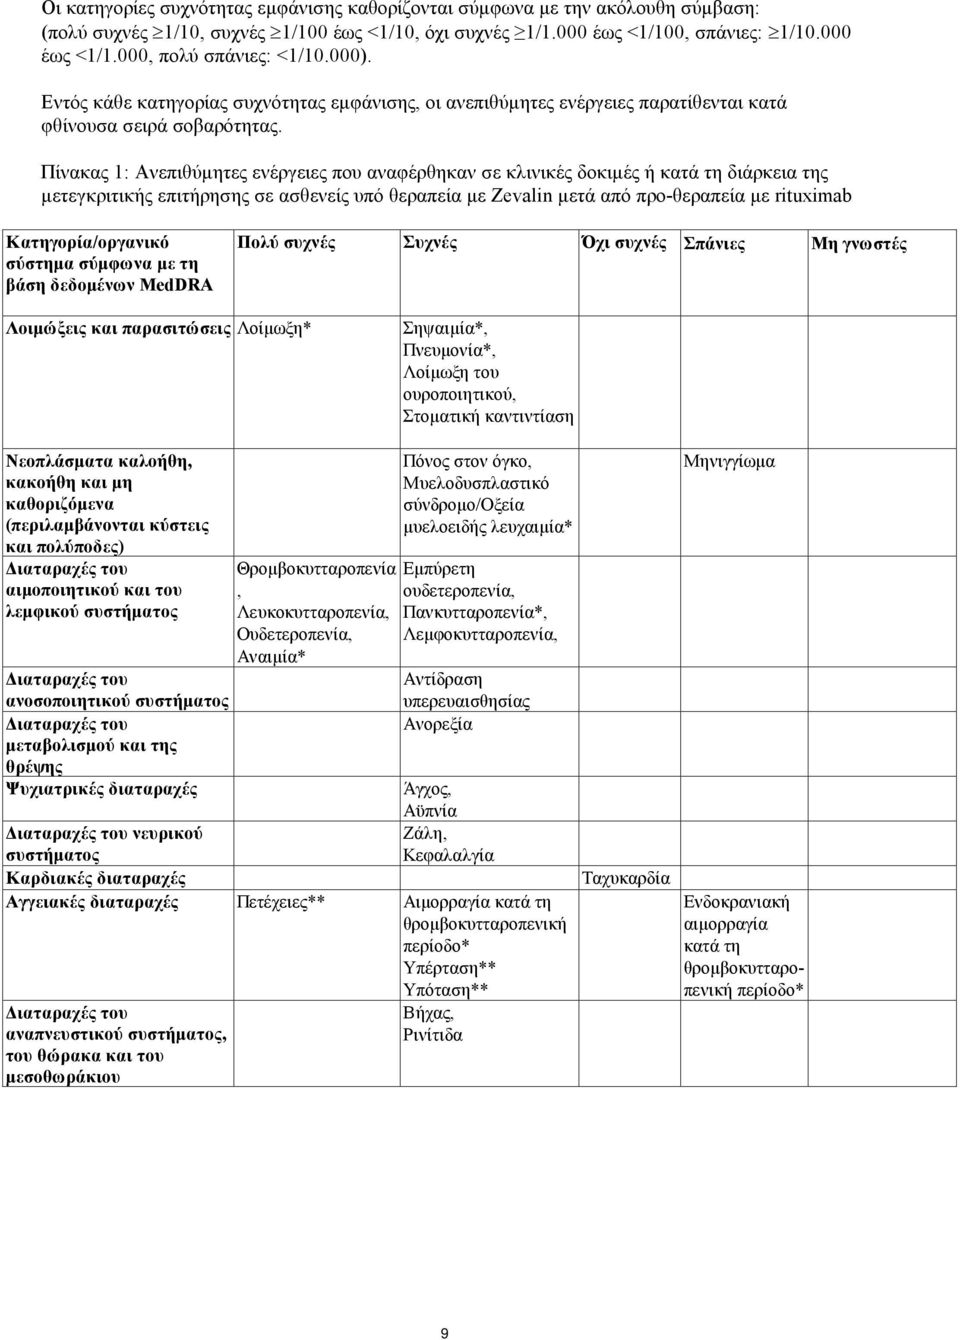 Πίνακας 1: Ανεπιθύμητες ενέργειες που αναφέρθηκαν σε κλινικές δοκιμές ή κατά τη διάρκεια της μετεγκριτικής επιτήρησης σε ασθενείς υπό θεραπεία με Zevalin μετά από προ-θεραπεία με rituximab